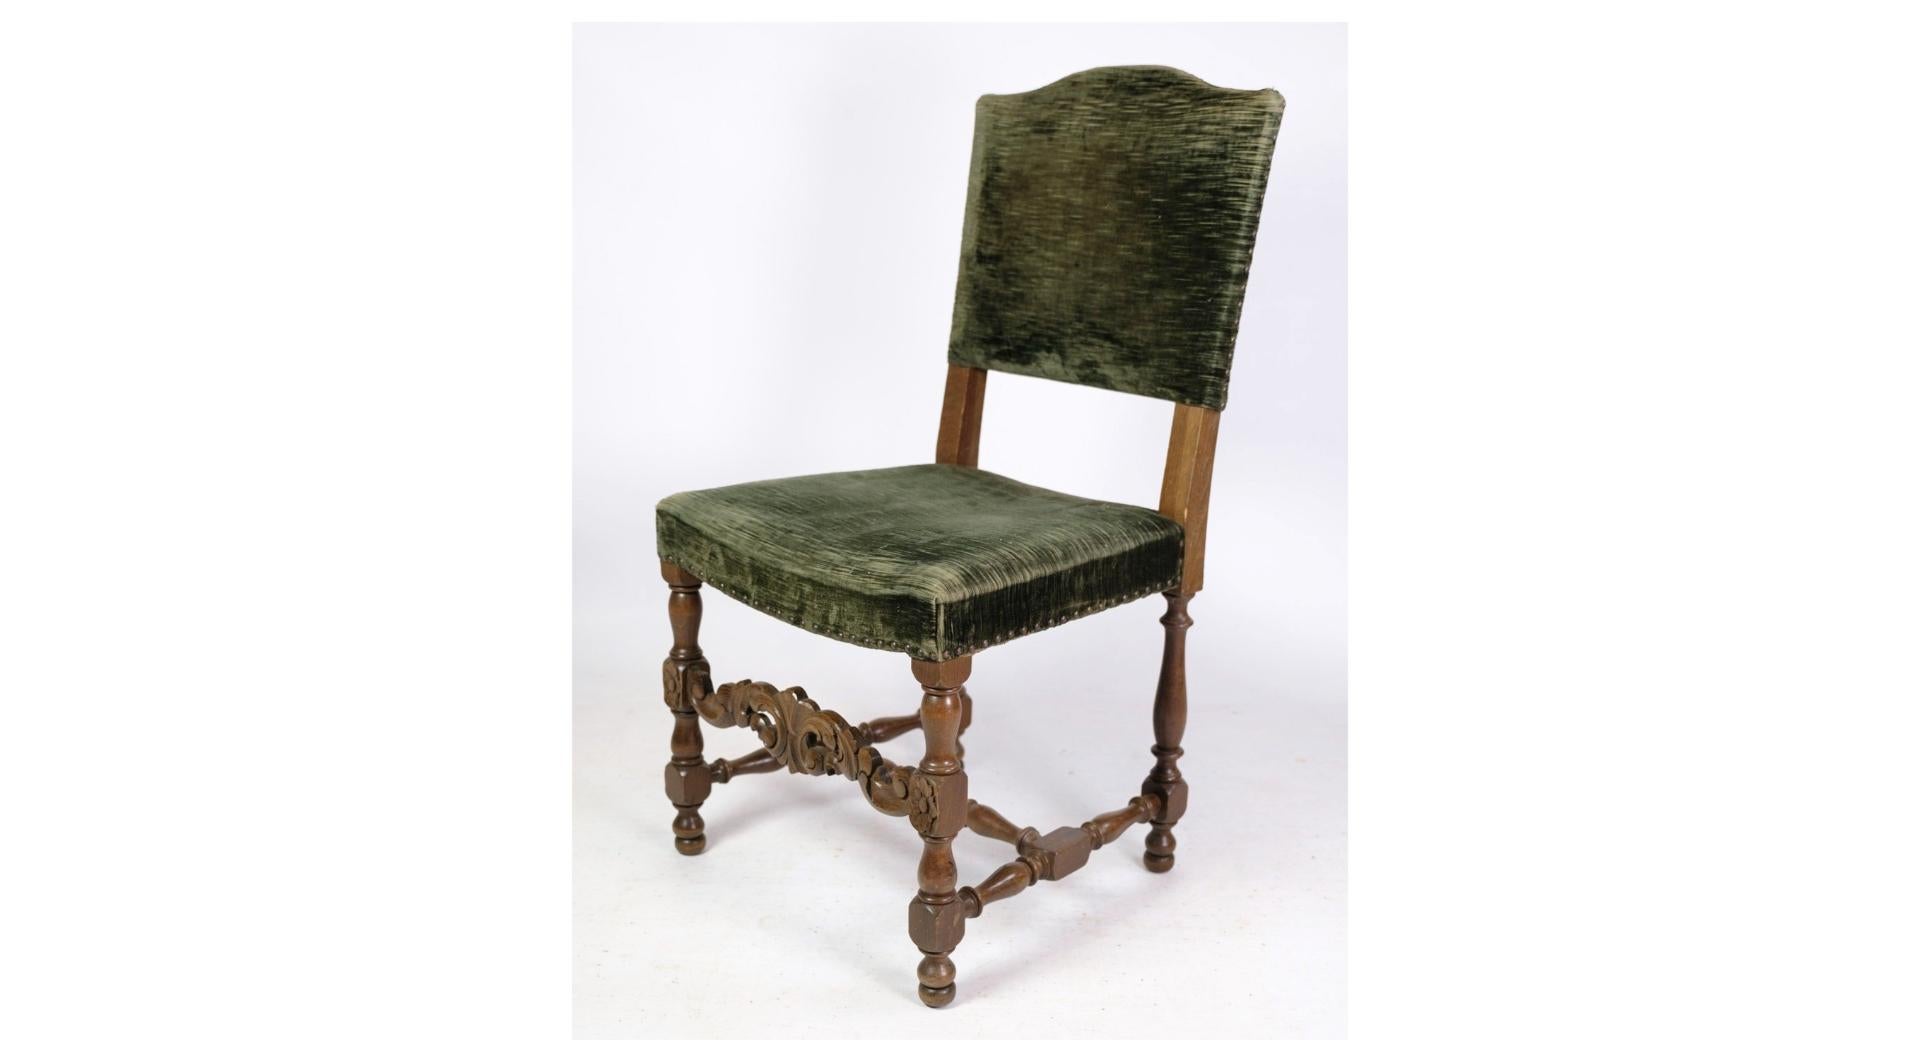 
Die beiden Eichenstühle im Renaissancestil, die mit grünem Veloursstoff aus den 1930er Jahren bezogen sind, sind exquisite Beispiele für zeitlos schöne Vintage-Möbel. Diese Stühle weisen ein klassisches Renaissance-Design auf, das sich durch